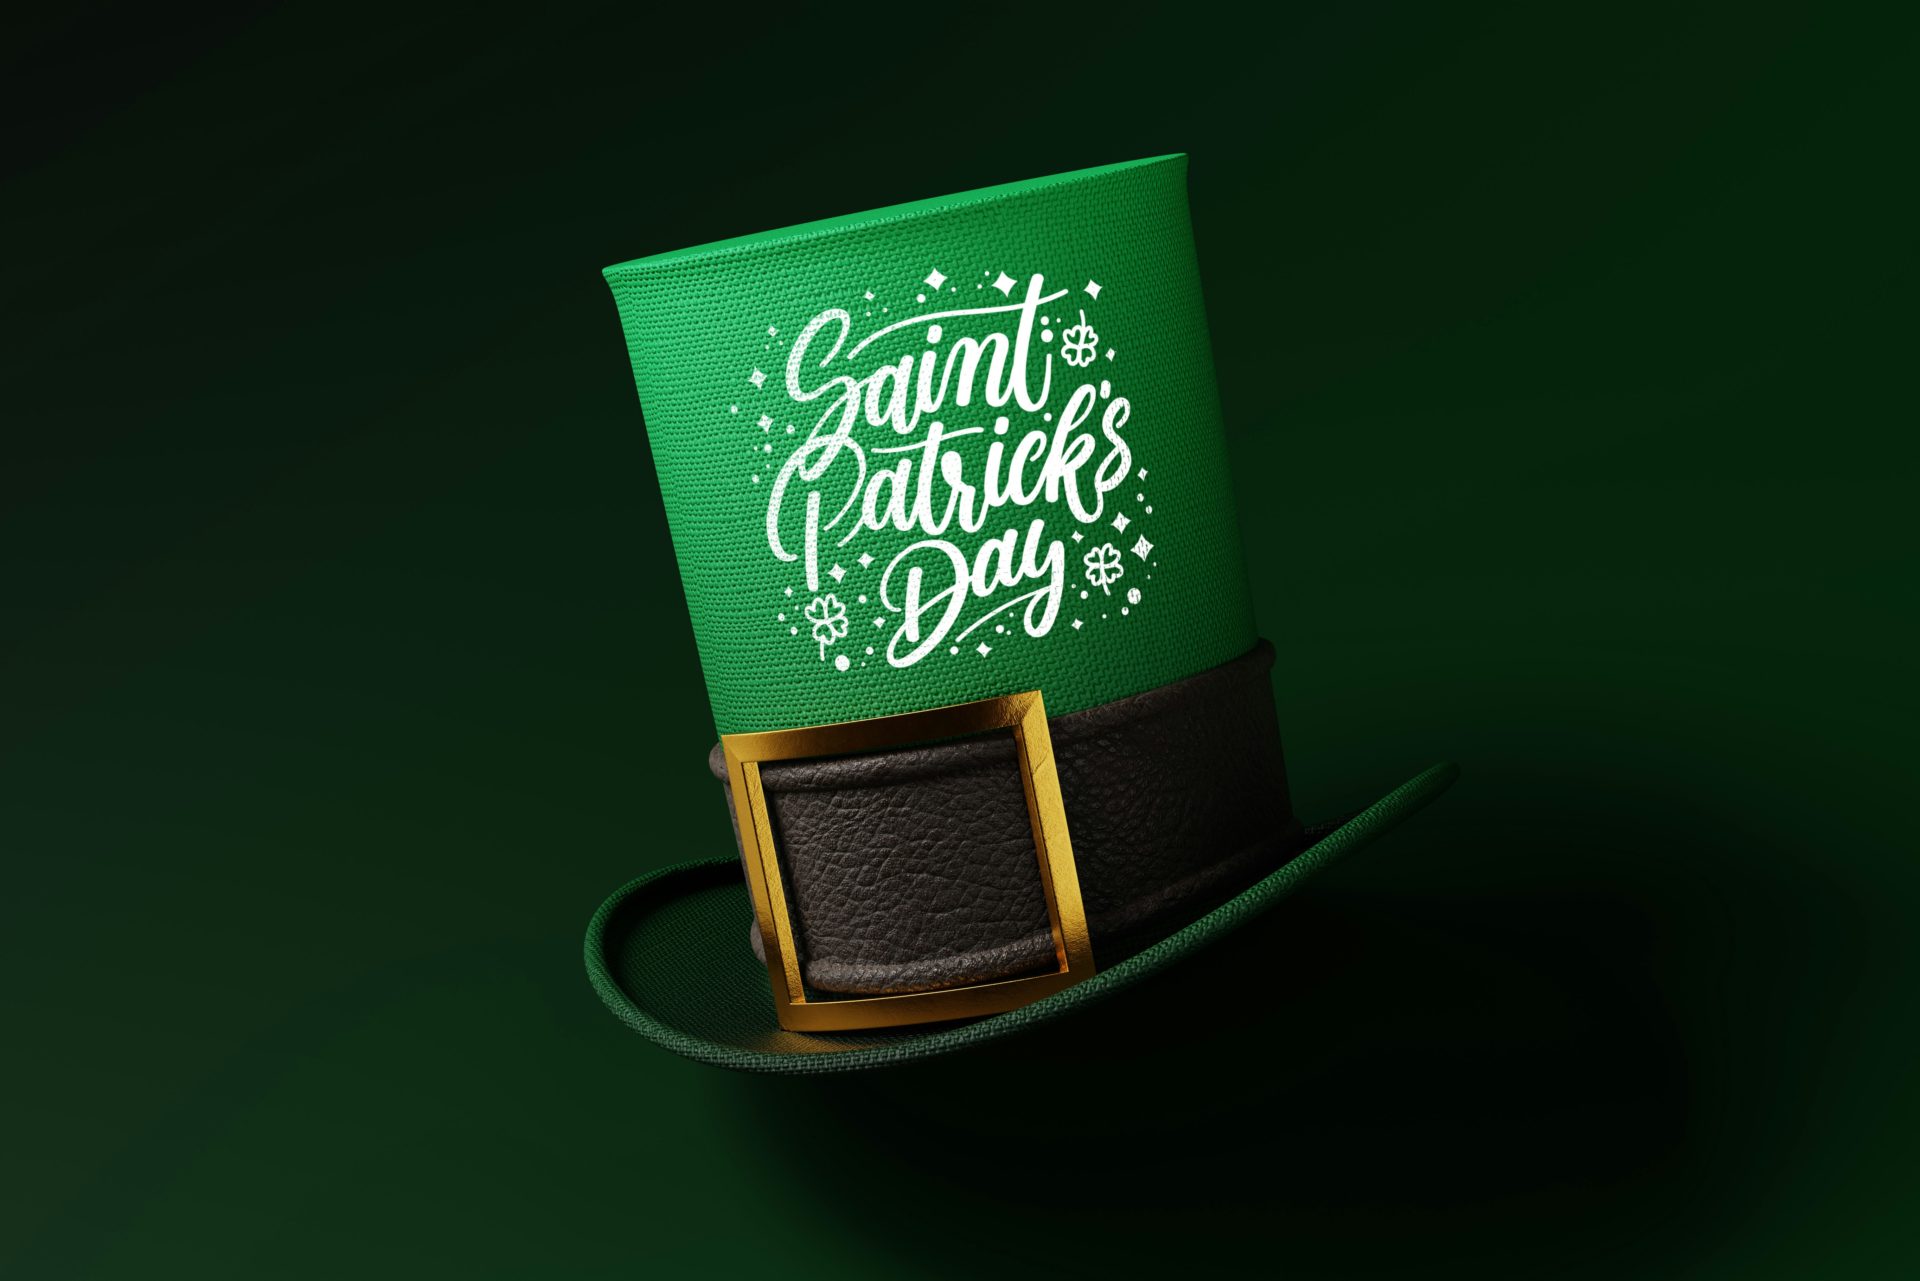 Ziua Sfântului Patrick la Bruxelles: Să sărbătorim norocul și bucuria! 🍀✨